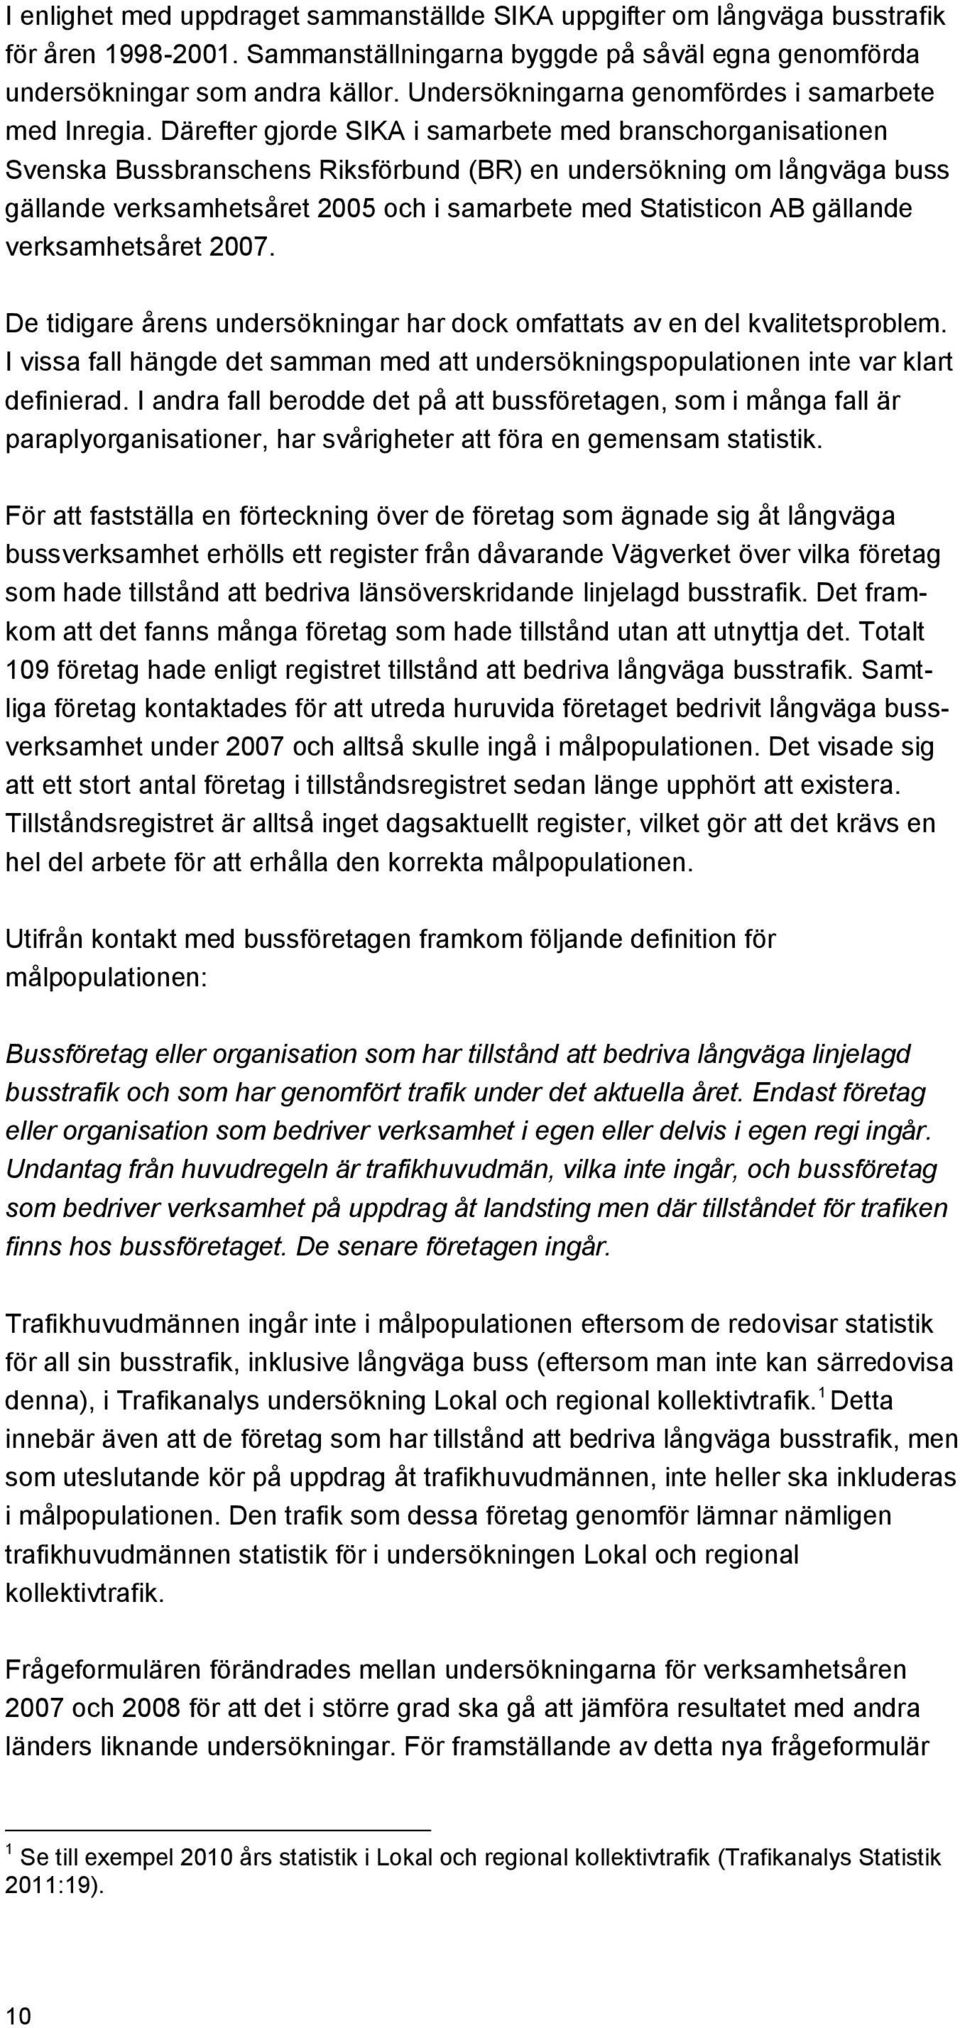 Därefter gjorde SIKA i samarbete med branschorganisationen Svenska Bussbranschens Riksförbund (BR) en undersökning om långväga buss gällande verksamhetsåret 2005 och i samarbete med Statisticon AB